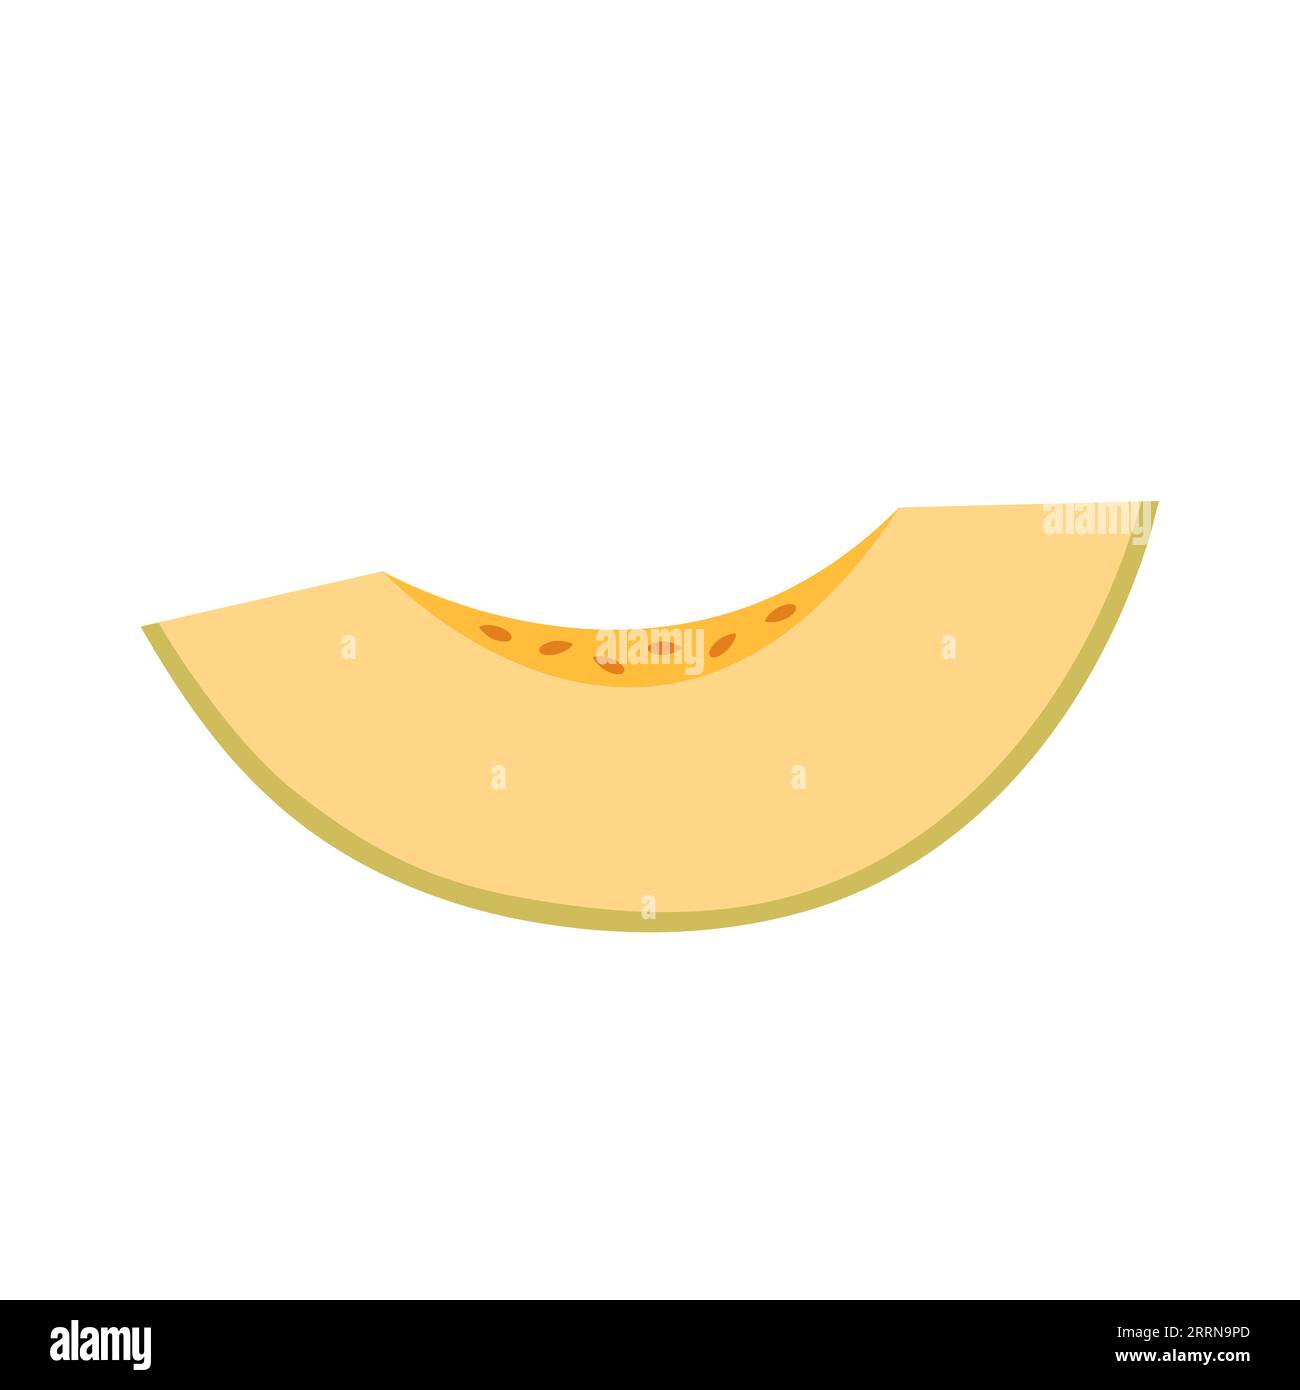 Melone. Fetta di frutta fresca. Pezzo tagliato con polpa gialla succosa. Illustrazione vettoriale dei cartoni animati piatta isolata su sfondo bianco. Illustrazione Vettoriale